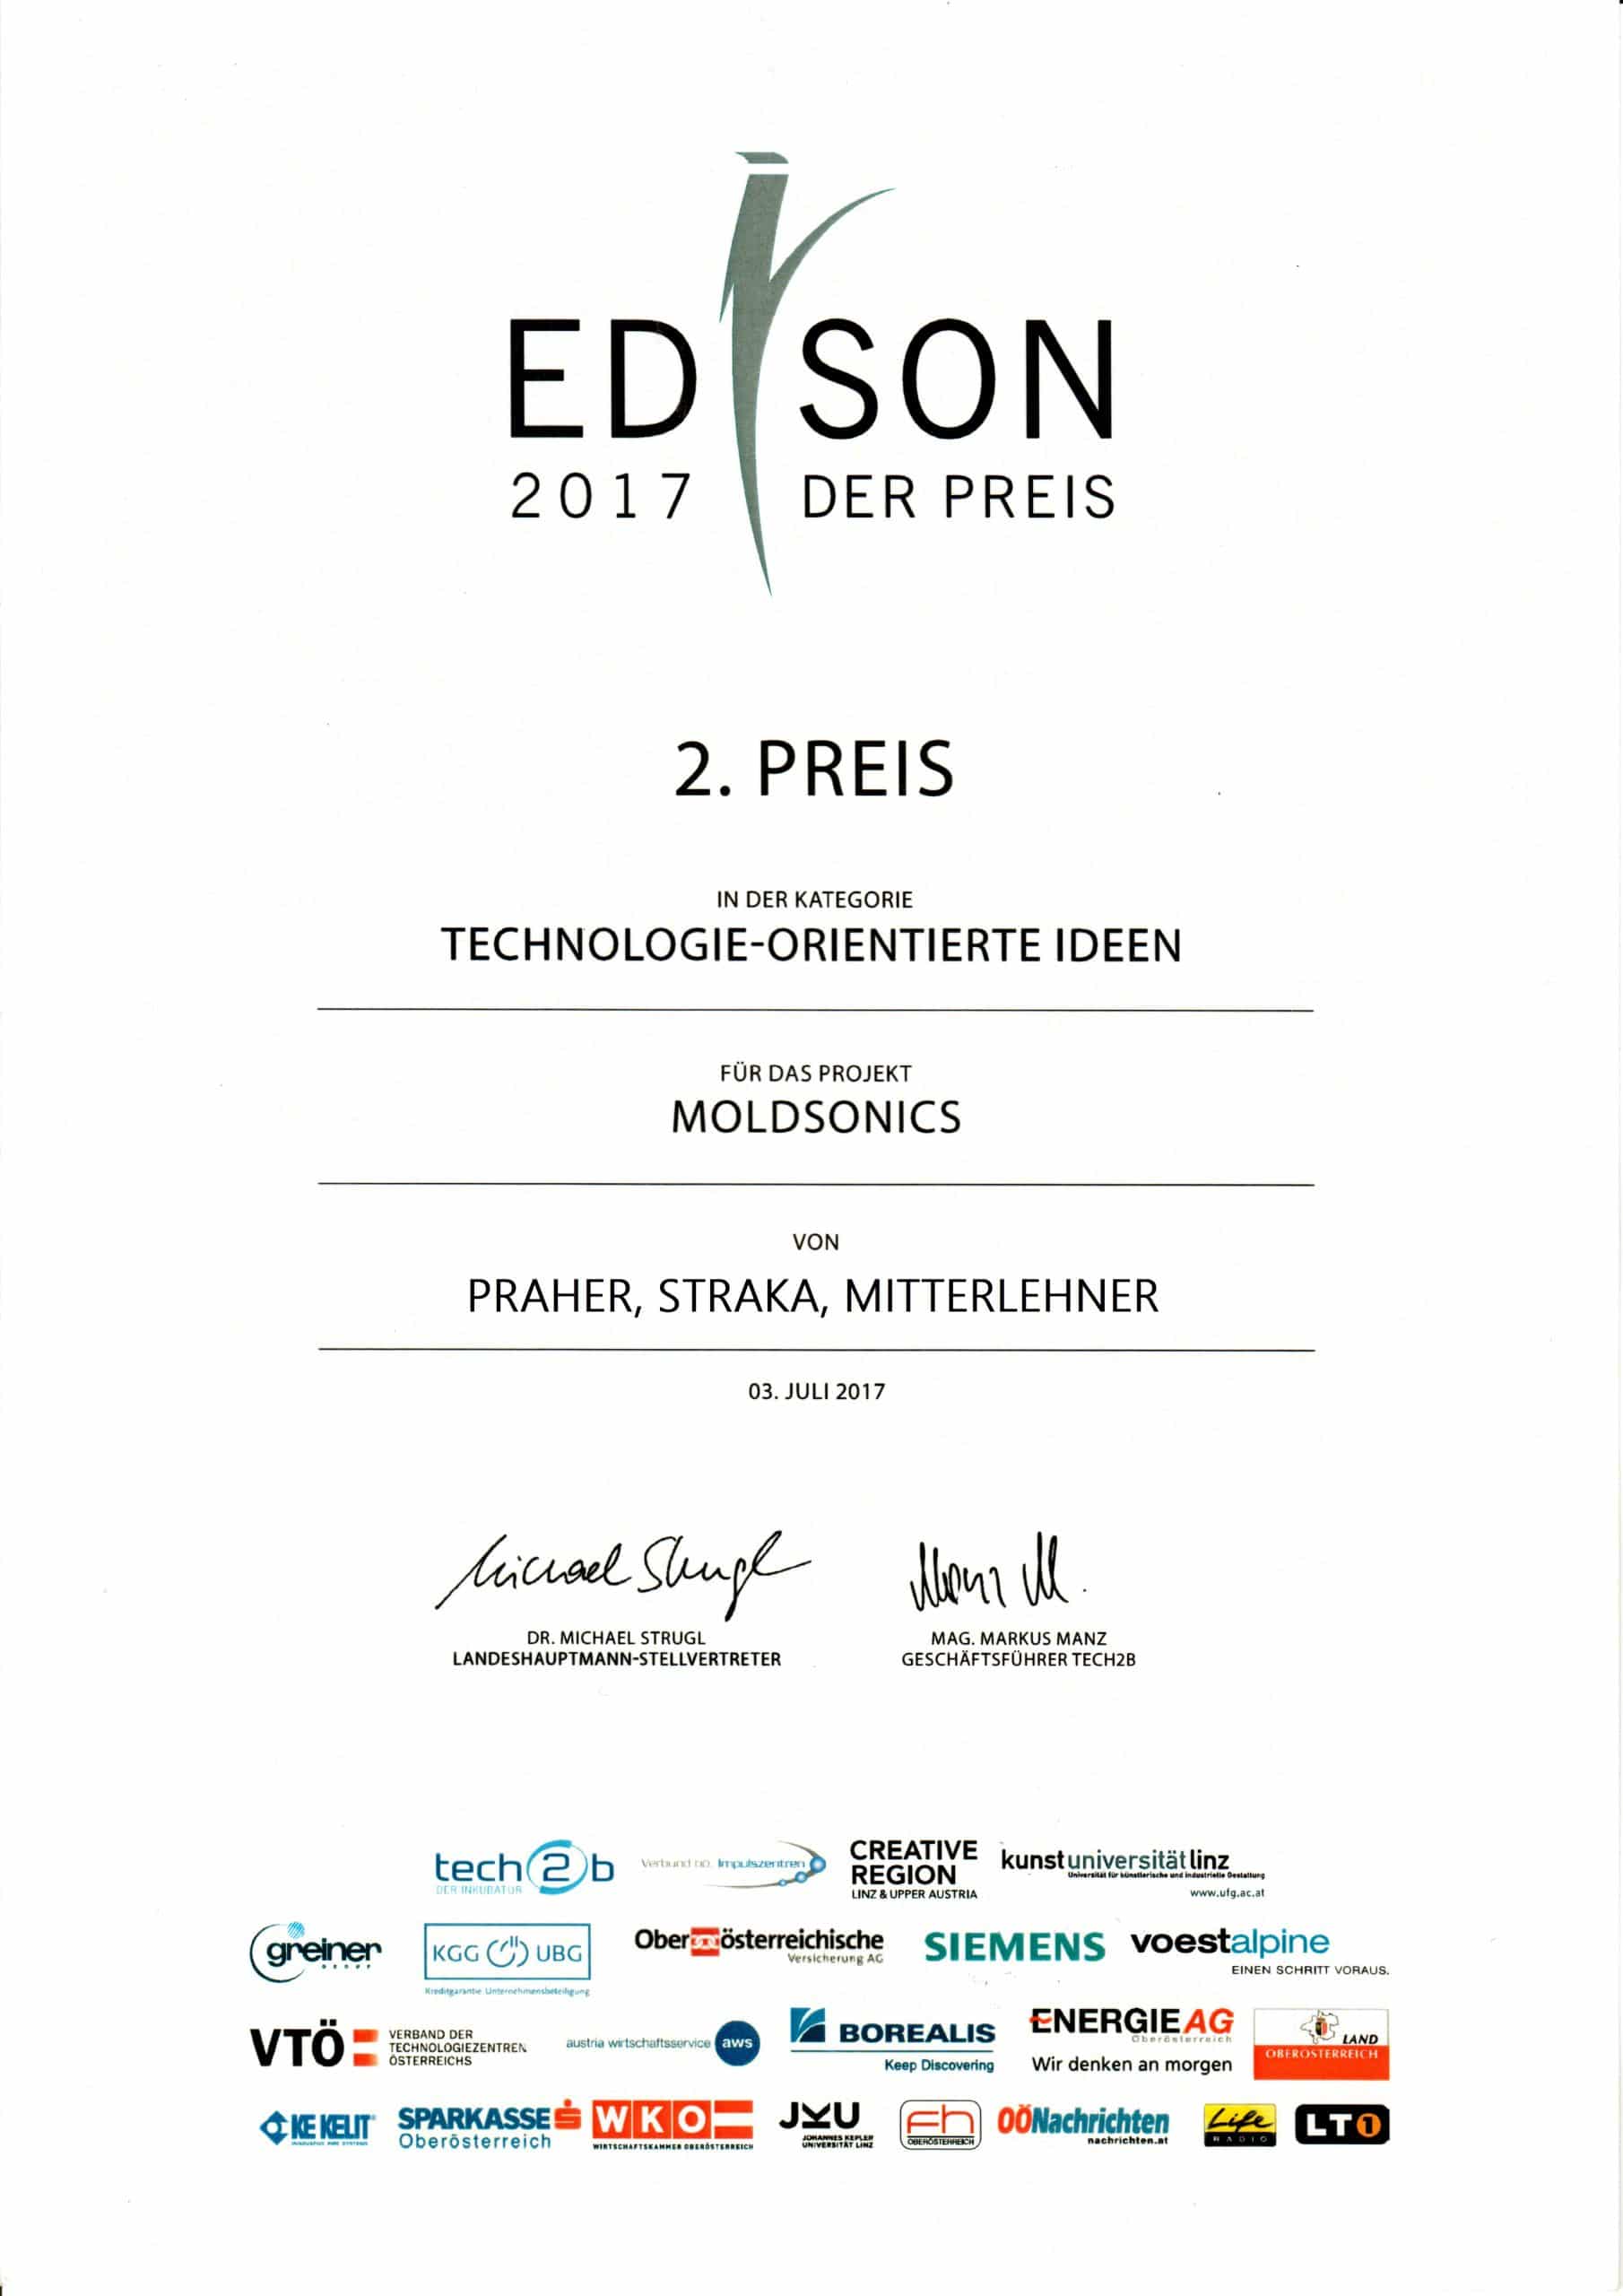 Edison Prize 2017